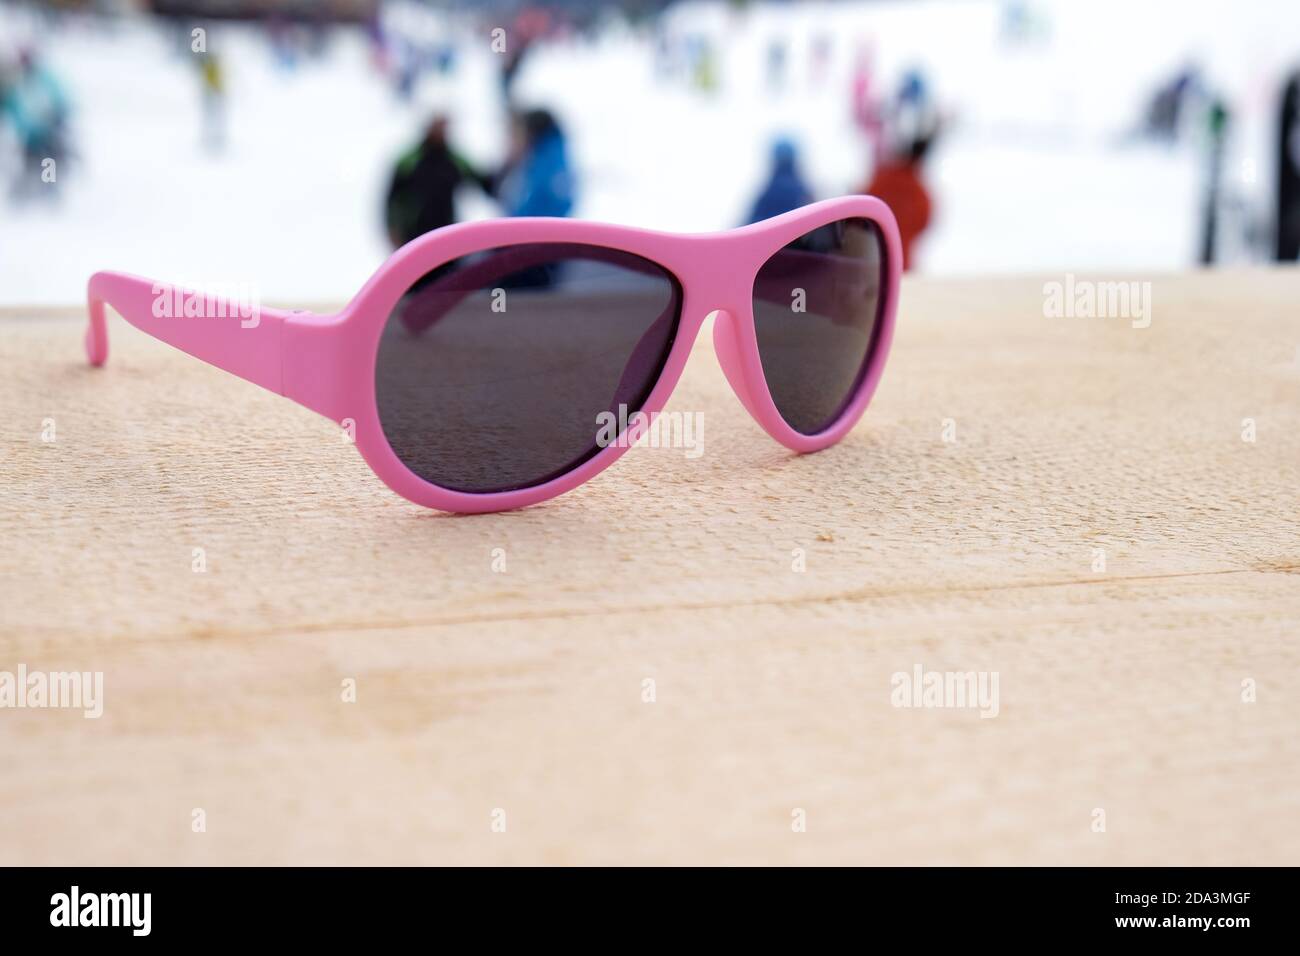 Lunettes de soleil à rebord rose sur une pente en bois dans un bar ou un  café après-ski, avec piste de ski en arrière-plan, espace de copie. Concept  de sports d'hiver, loisirs,